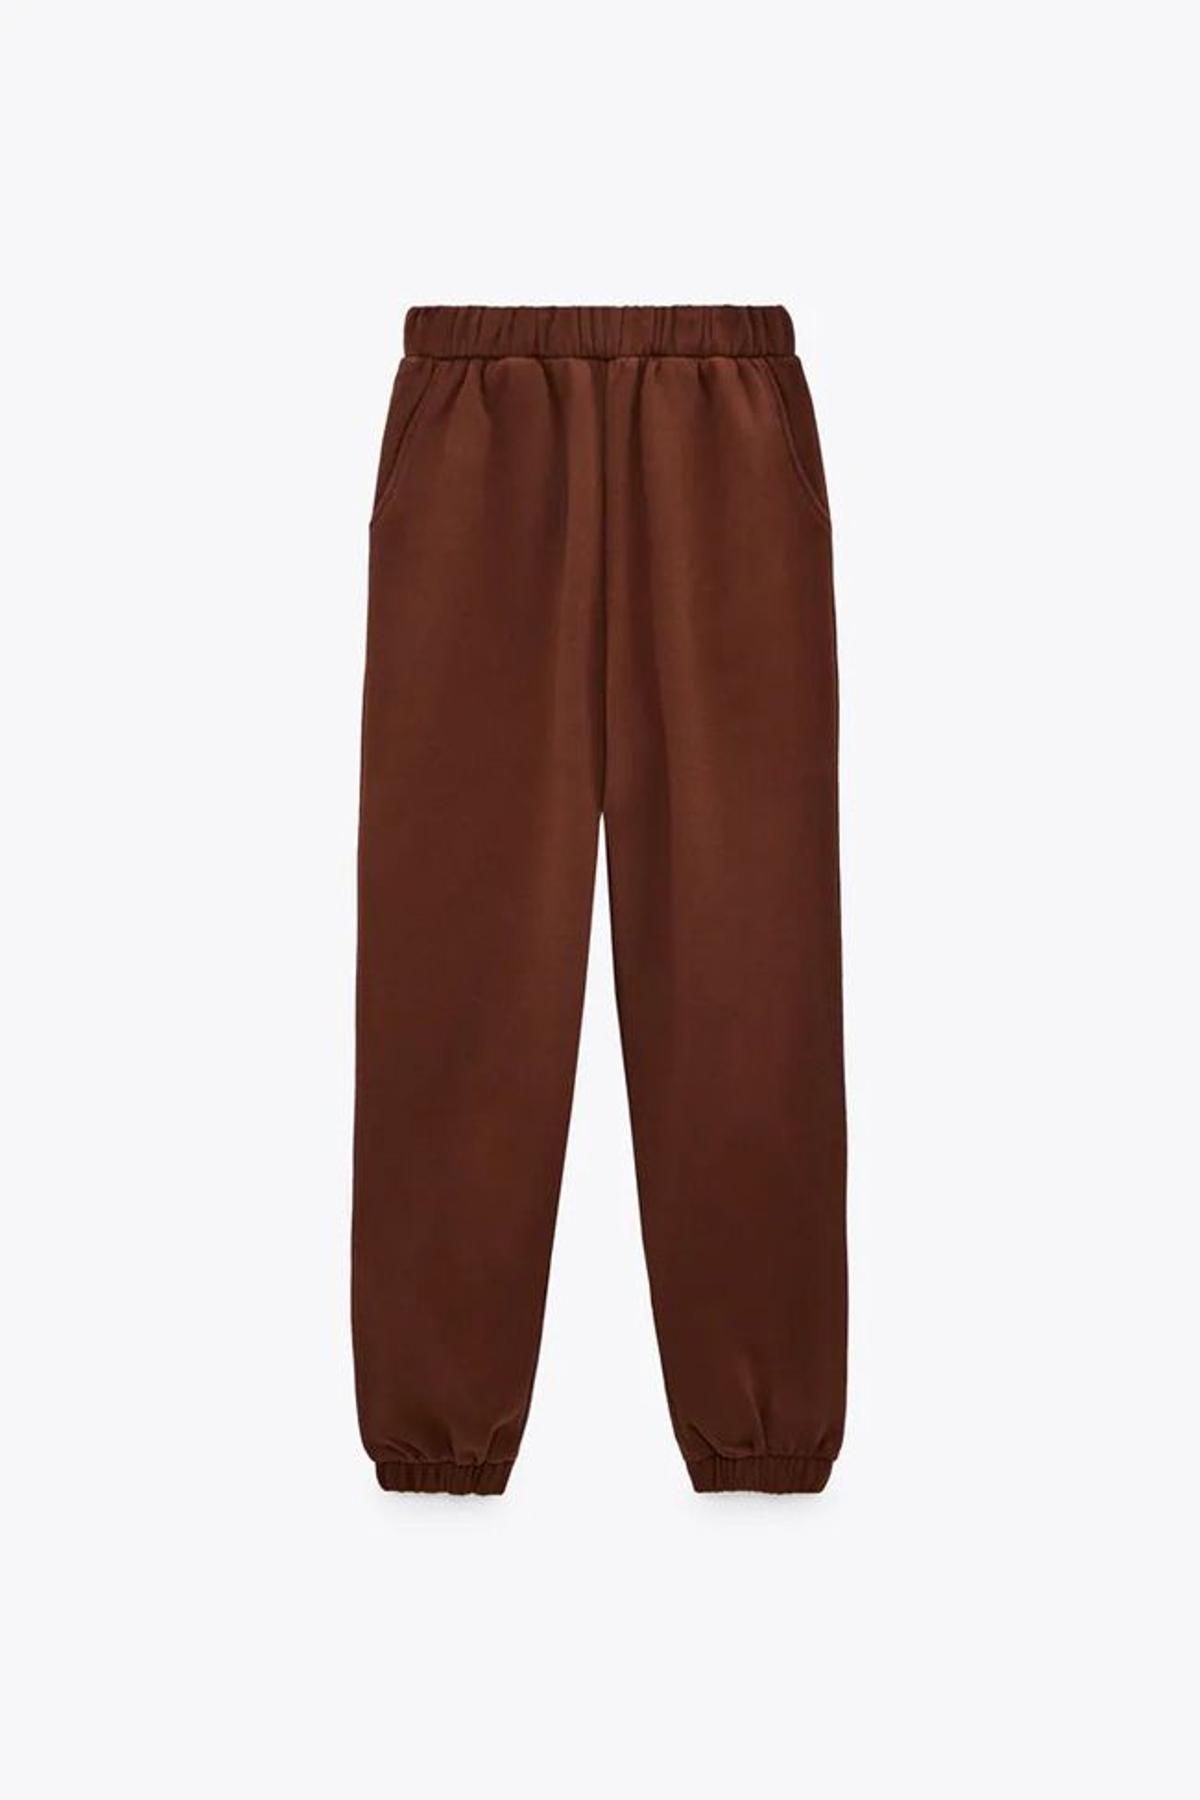 Pantalón 'jogger' marrón, de Zara